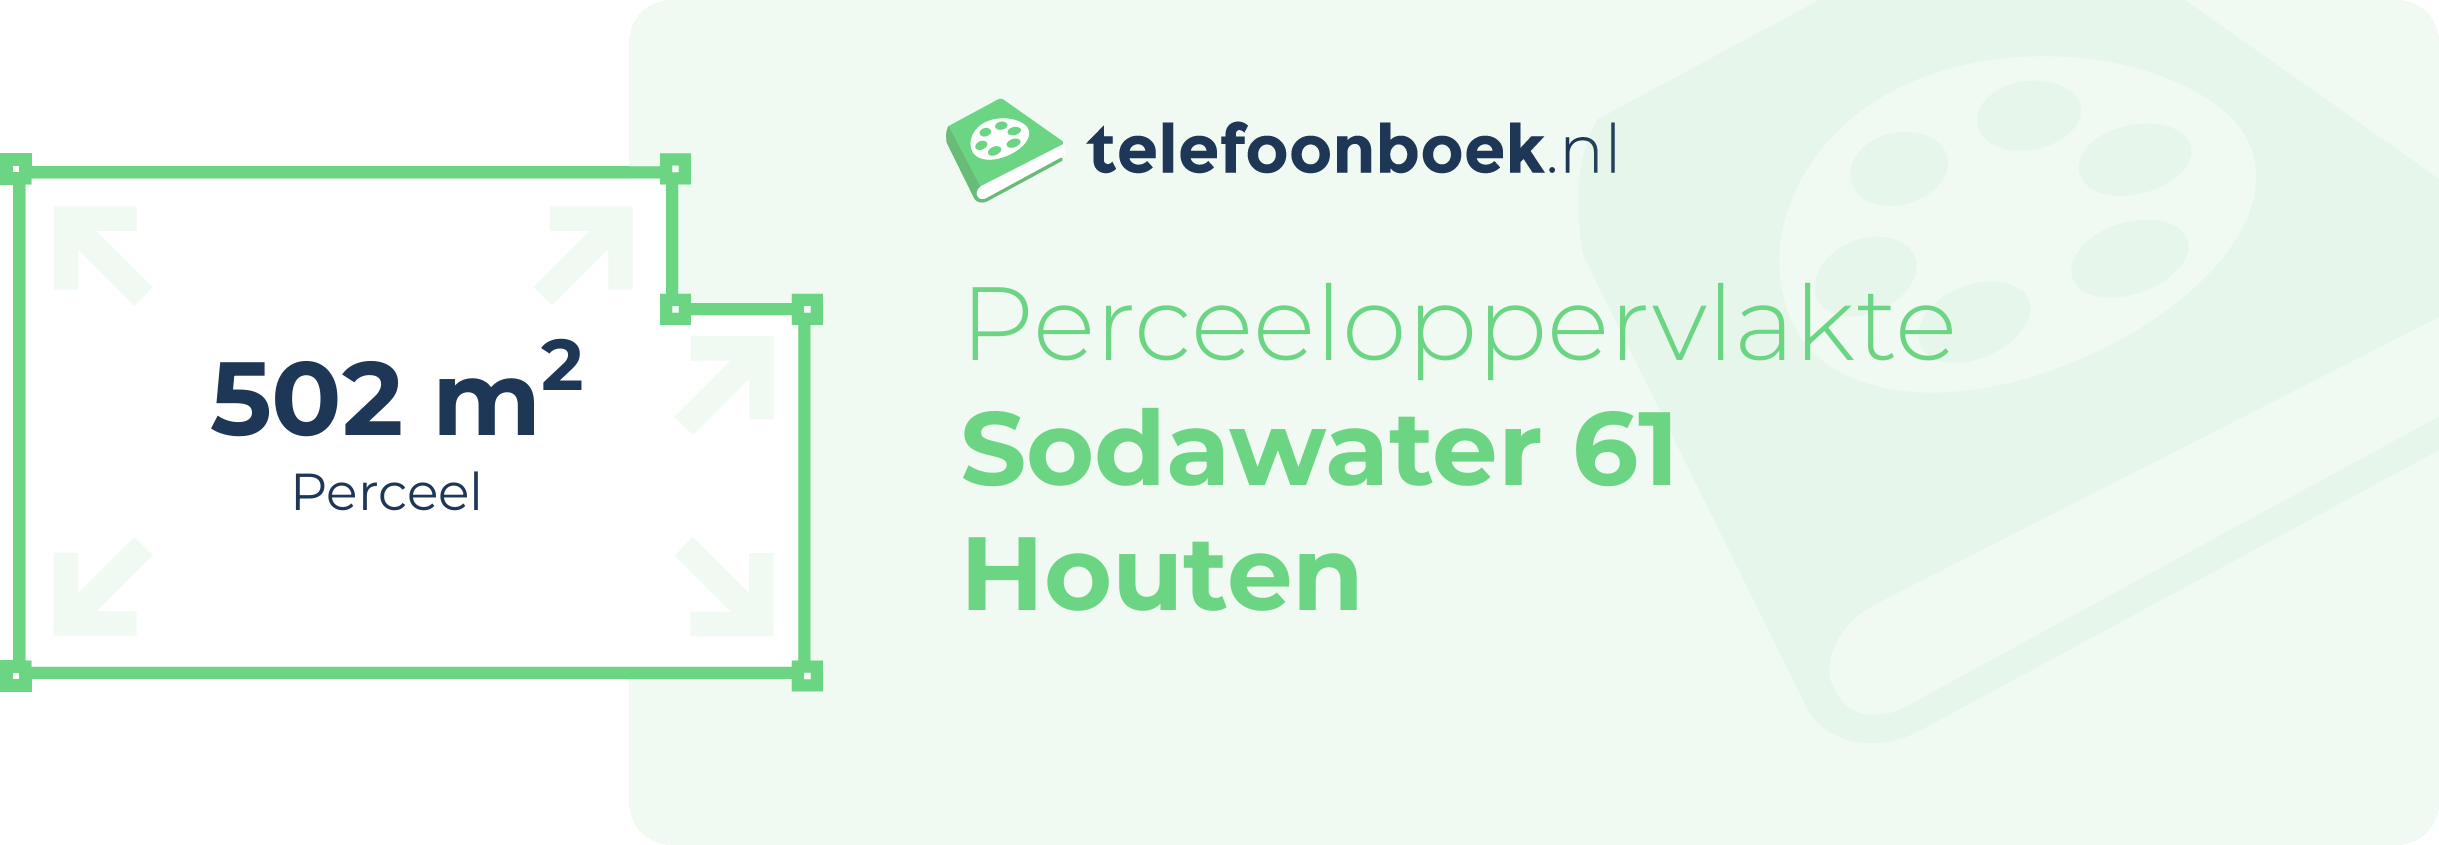 Perceeloppervlakte Sodawater 61 Houten